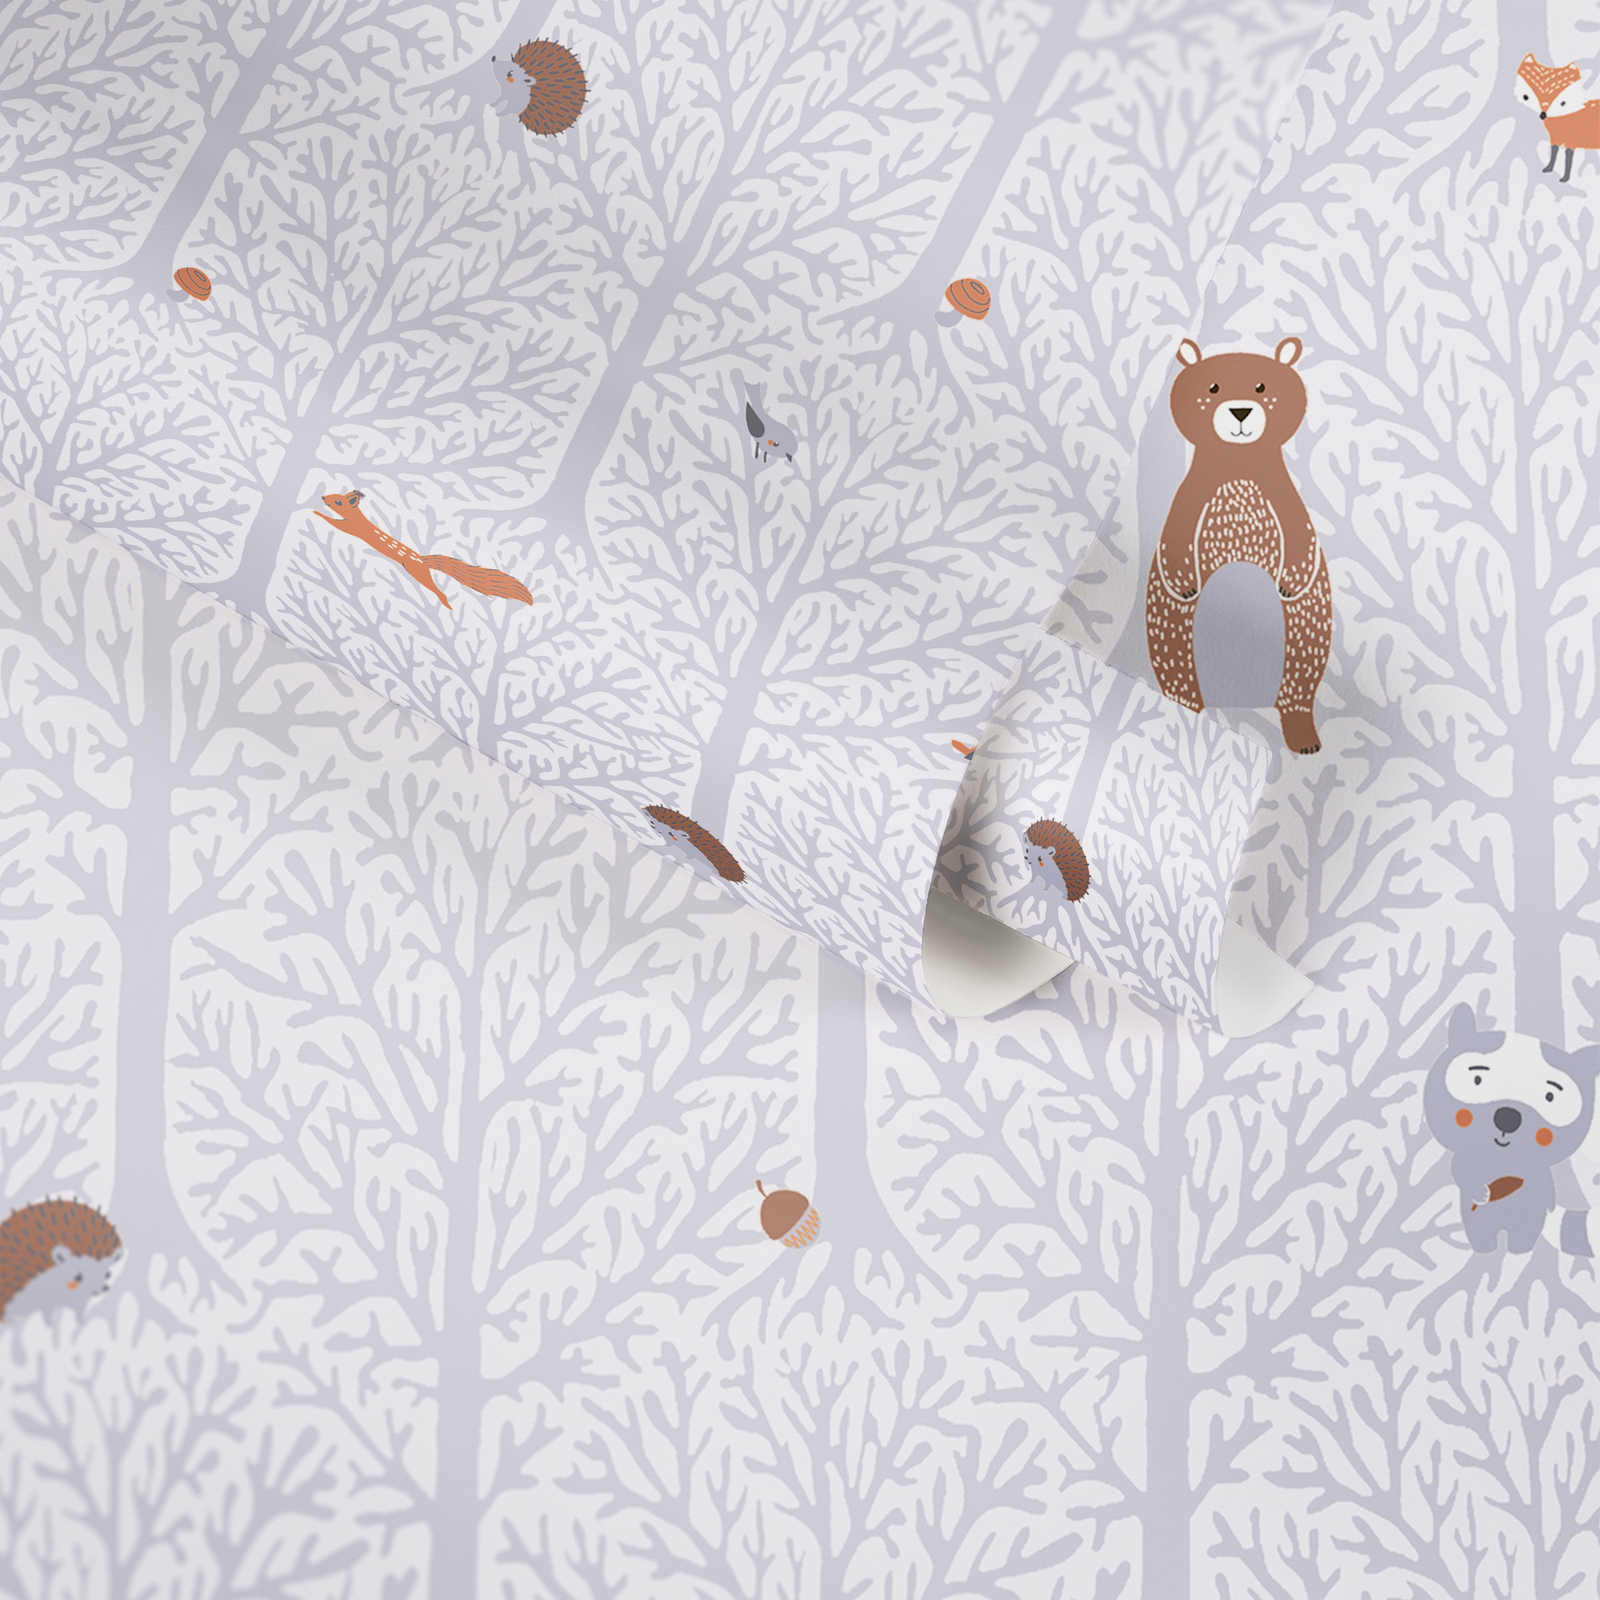             Papel pintado de habitación infantil niñas animales del bosque - gris, blanco, marrón
        